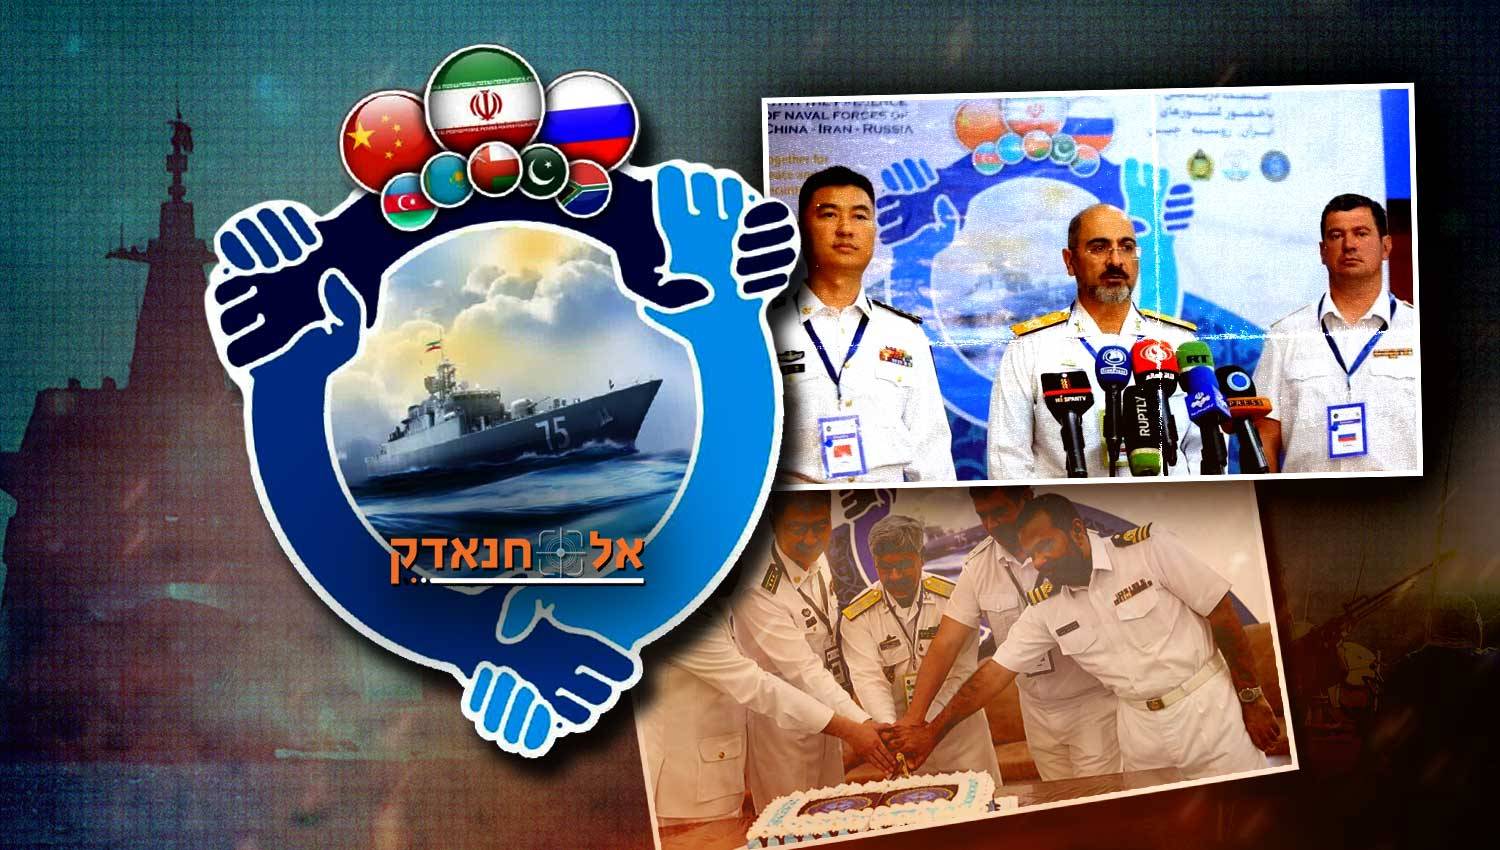 מהם המסרים הבולטים ביותר בתמרוני הצי האיראני, הרוסי והסיני?